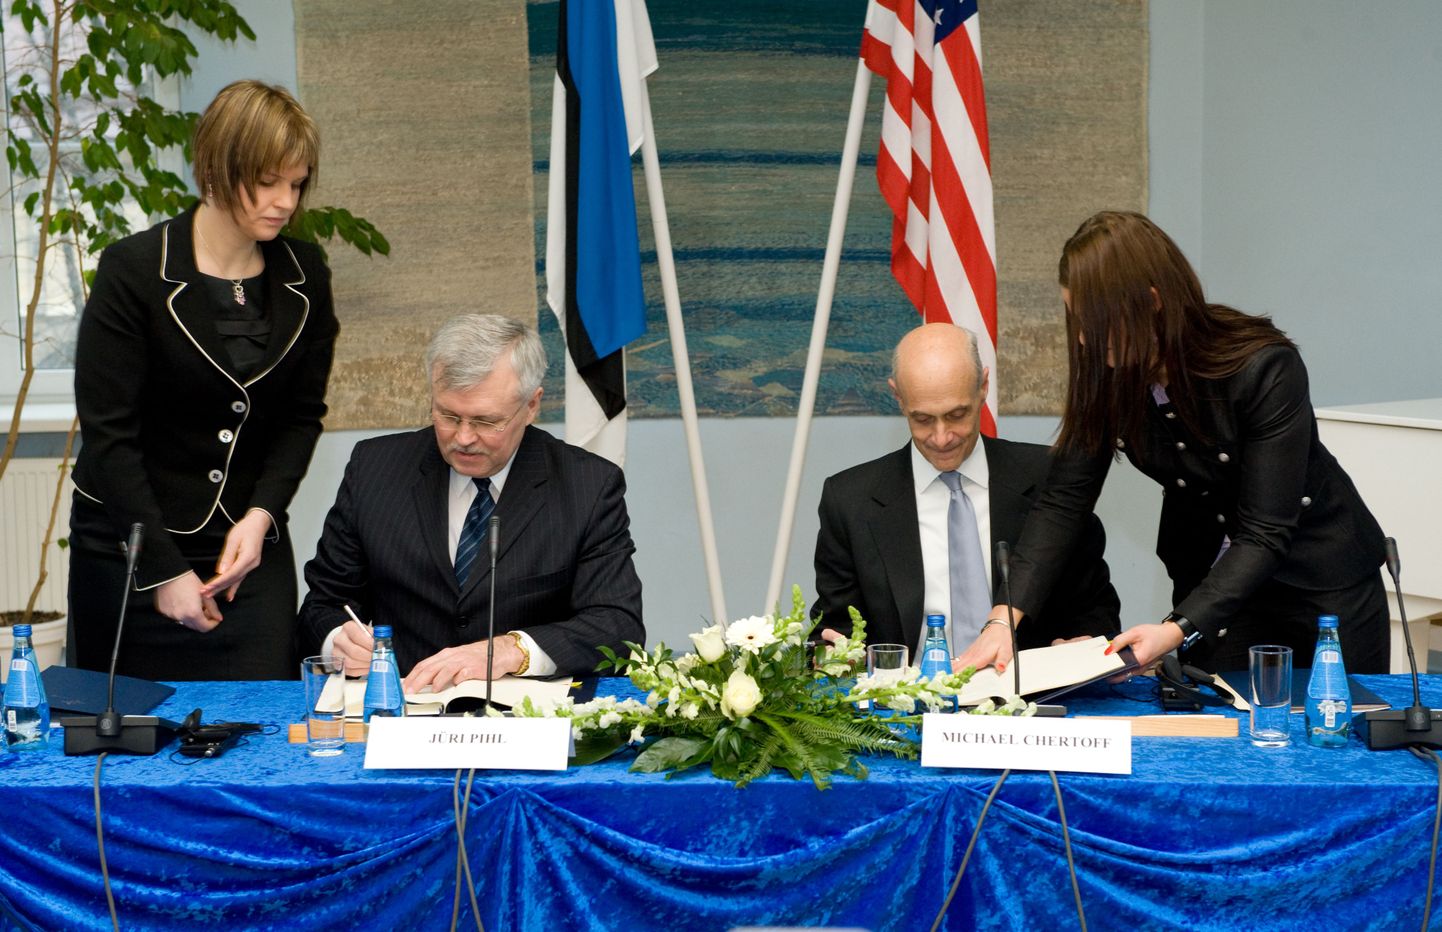 USA ja Eesti viisavabaduse memorandumi allkirjastamine, pildil on siseminister Jüri Pihl ja Ühendriikide sisejulgeoleku minister Michael Chertoff.